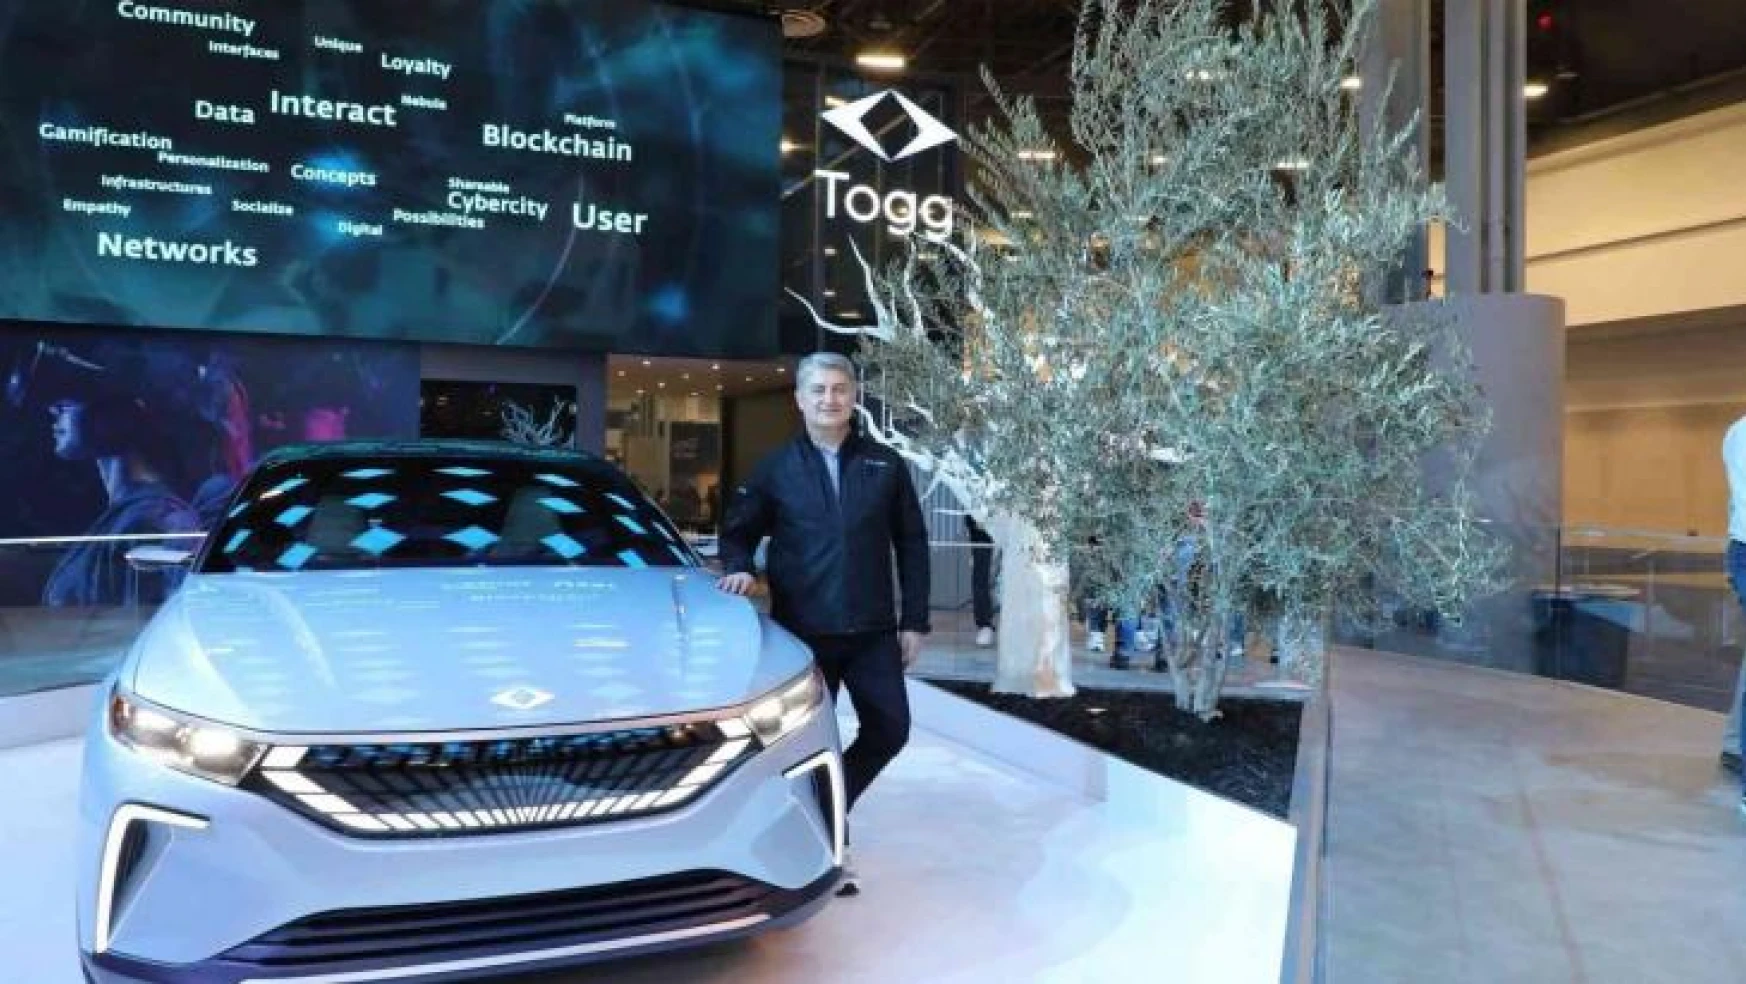 Togg CEO'su Karakaş: 'Biz otomobili yeni nesil akıllı cihaza dönüştürüyoruz'